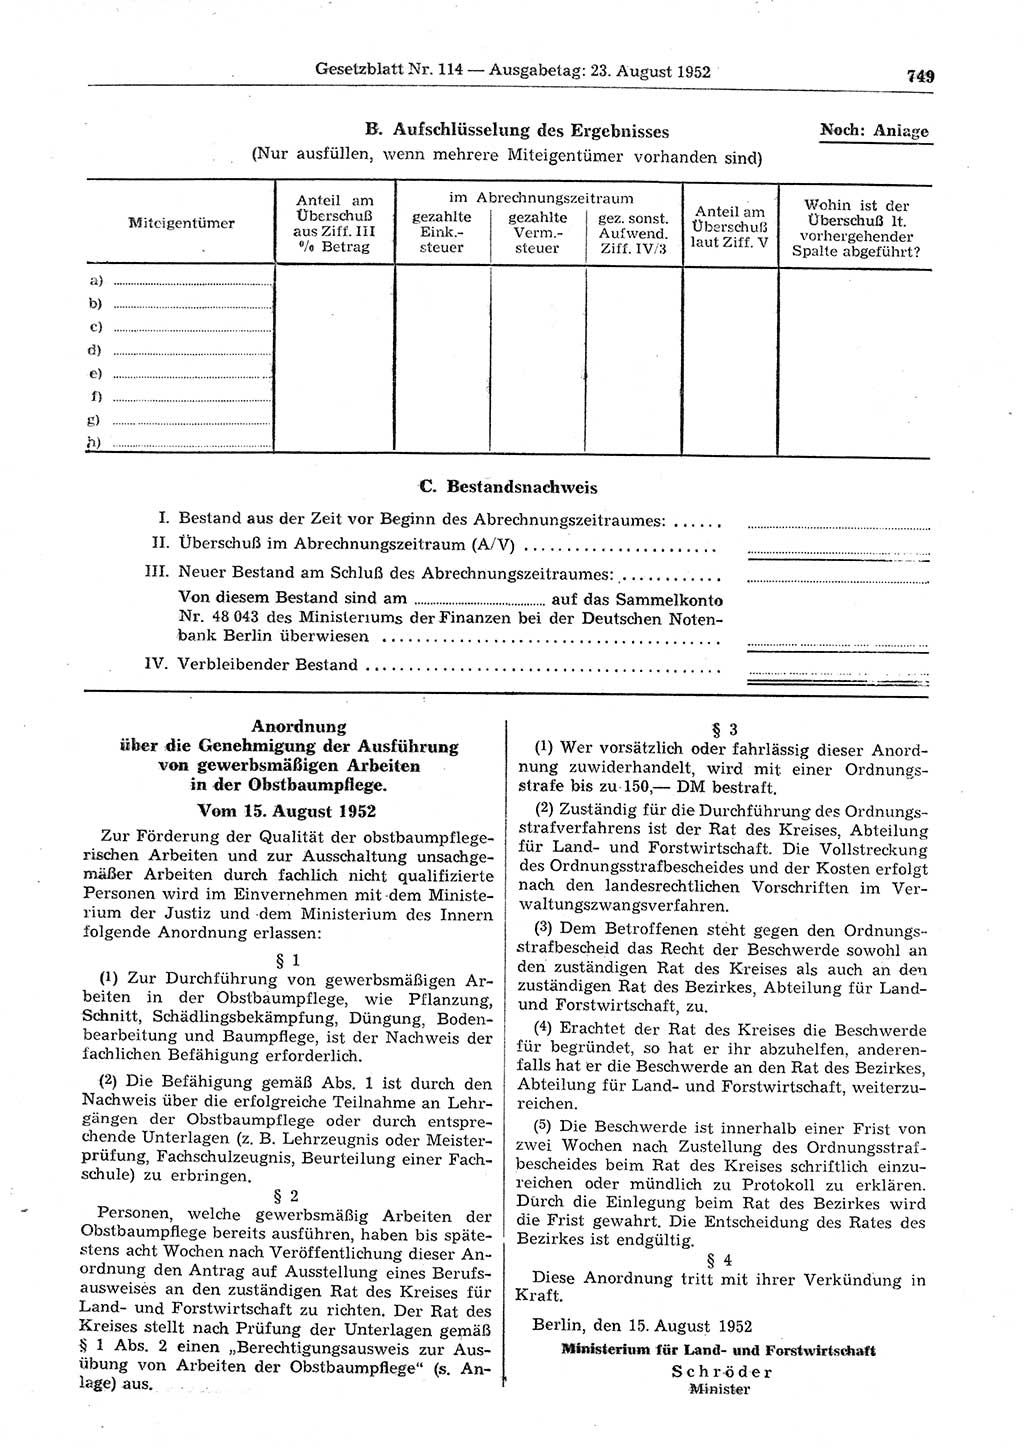 Gesetzblatt (GBl.) der Deutschen Demokratischen Republik (DDR) 1952, Seite 749 (GBl. DDR 1952, S. 749)